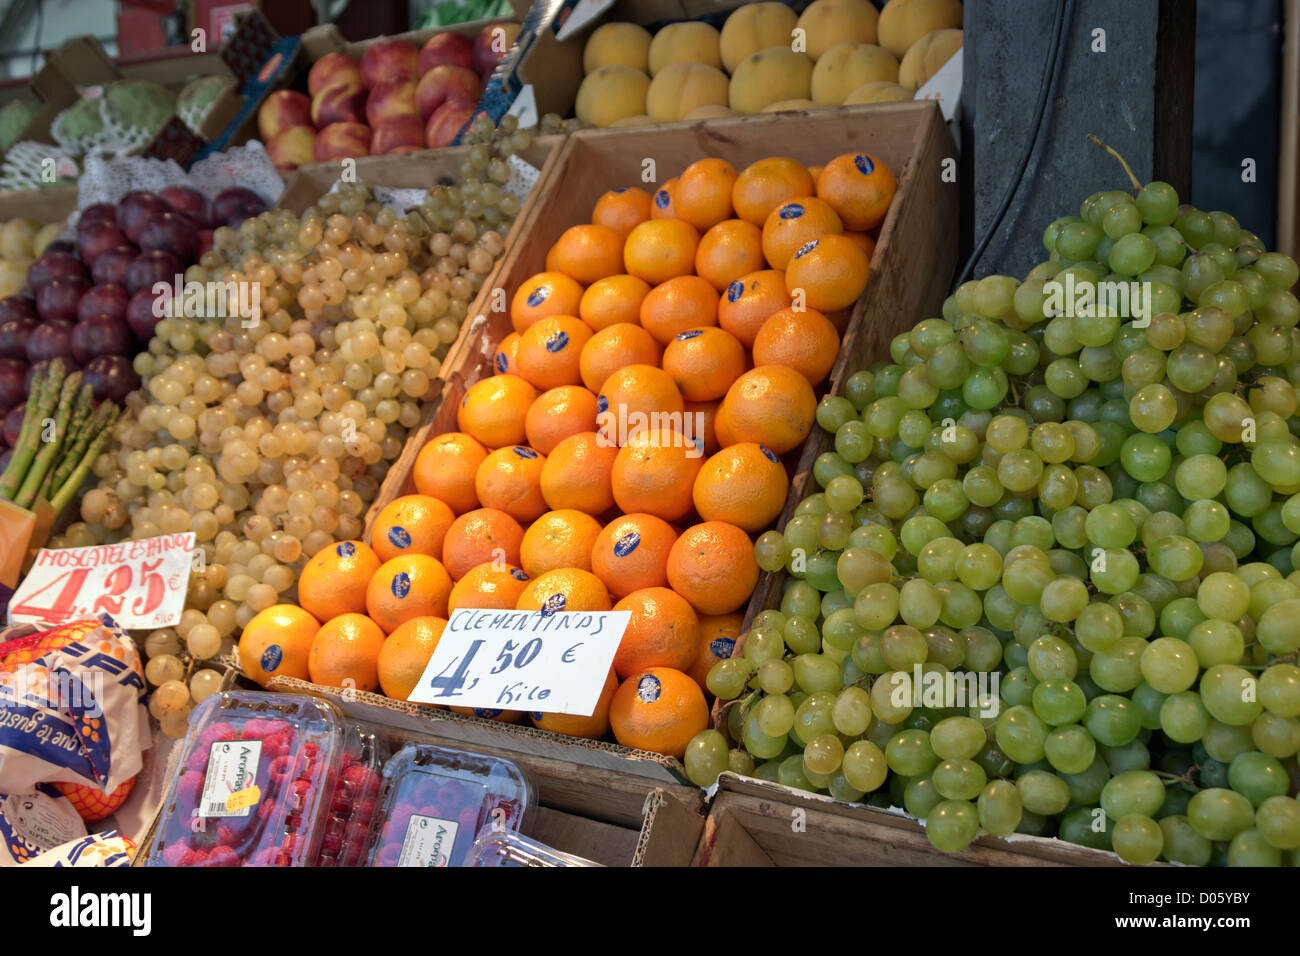 Mercado de San Miguel, Madrid, Spanien. Anzeige von frischem Obst zum Verkauf. Stockfoto